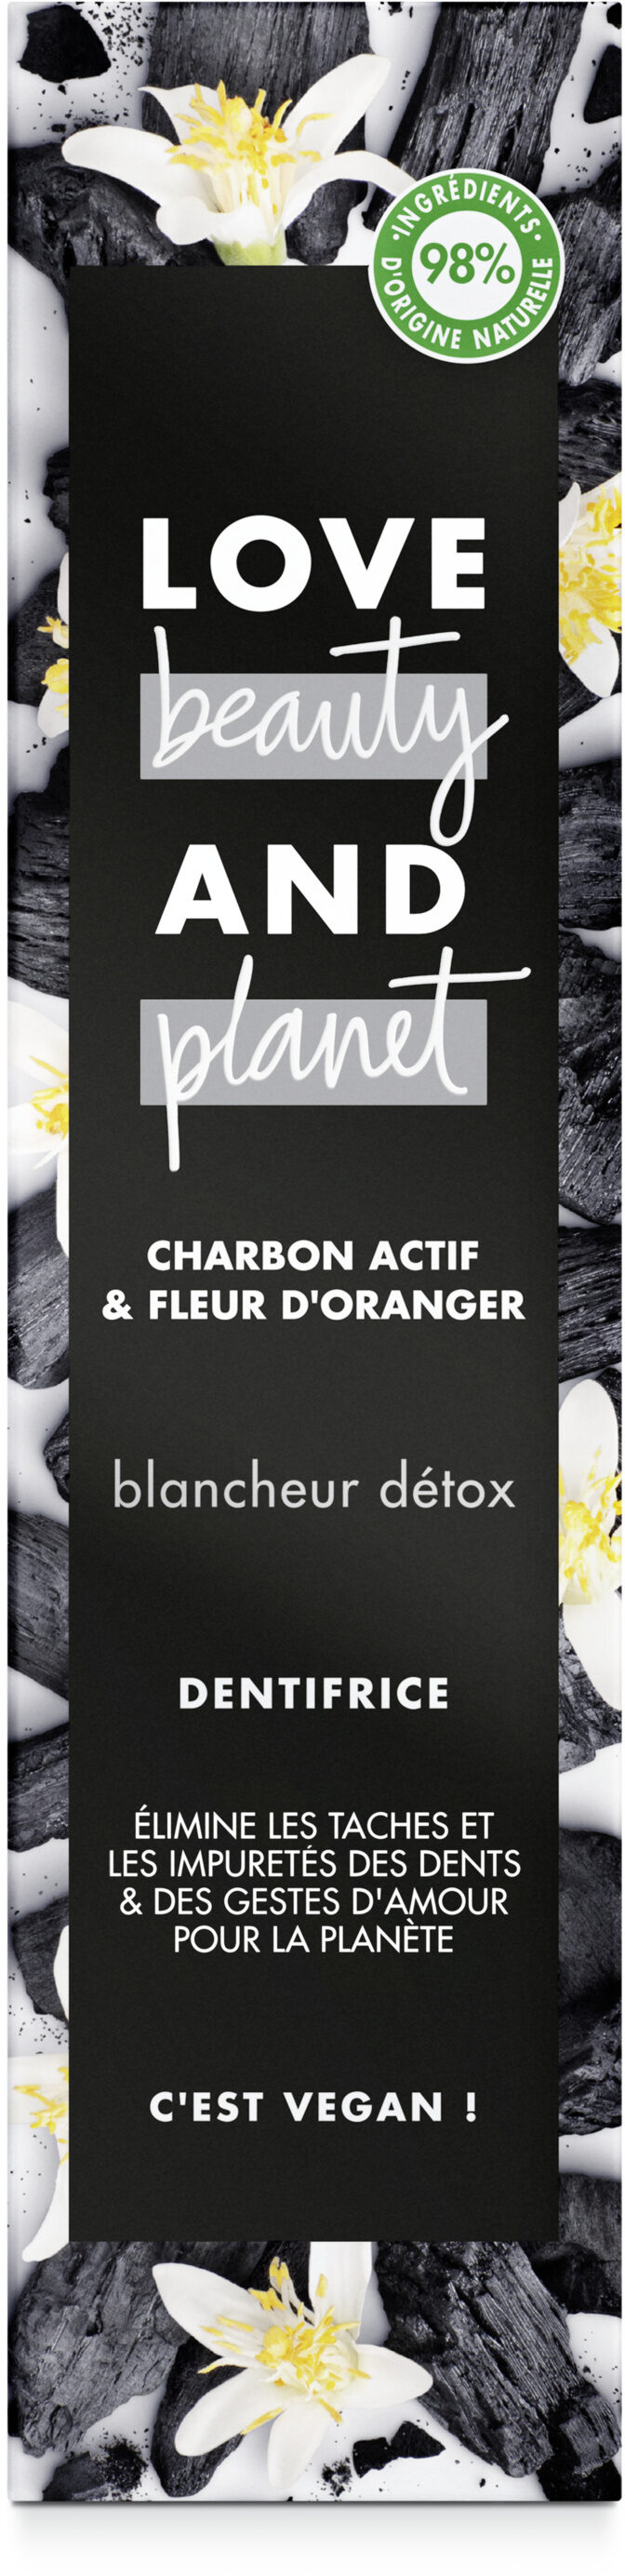 Love Beauty And Planet Dentifrice Blancheur Détox - Produit - fr